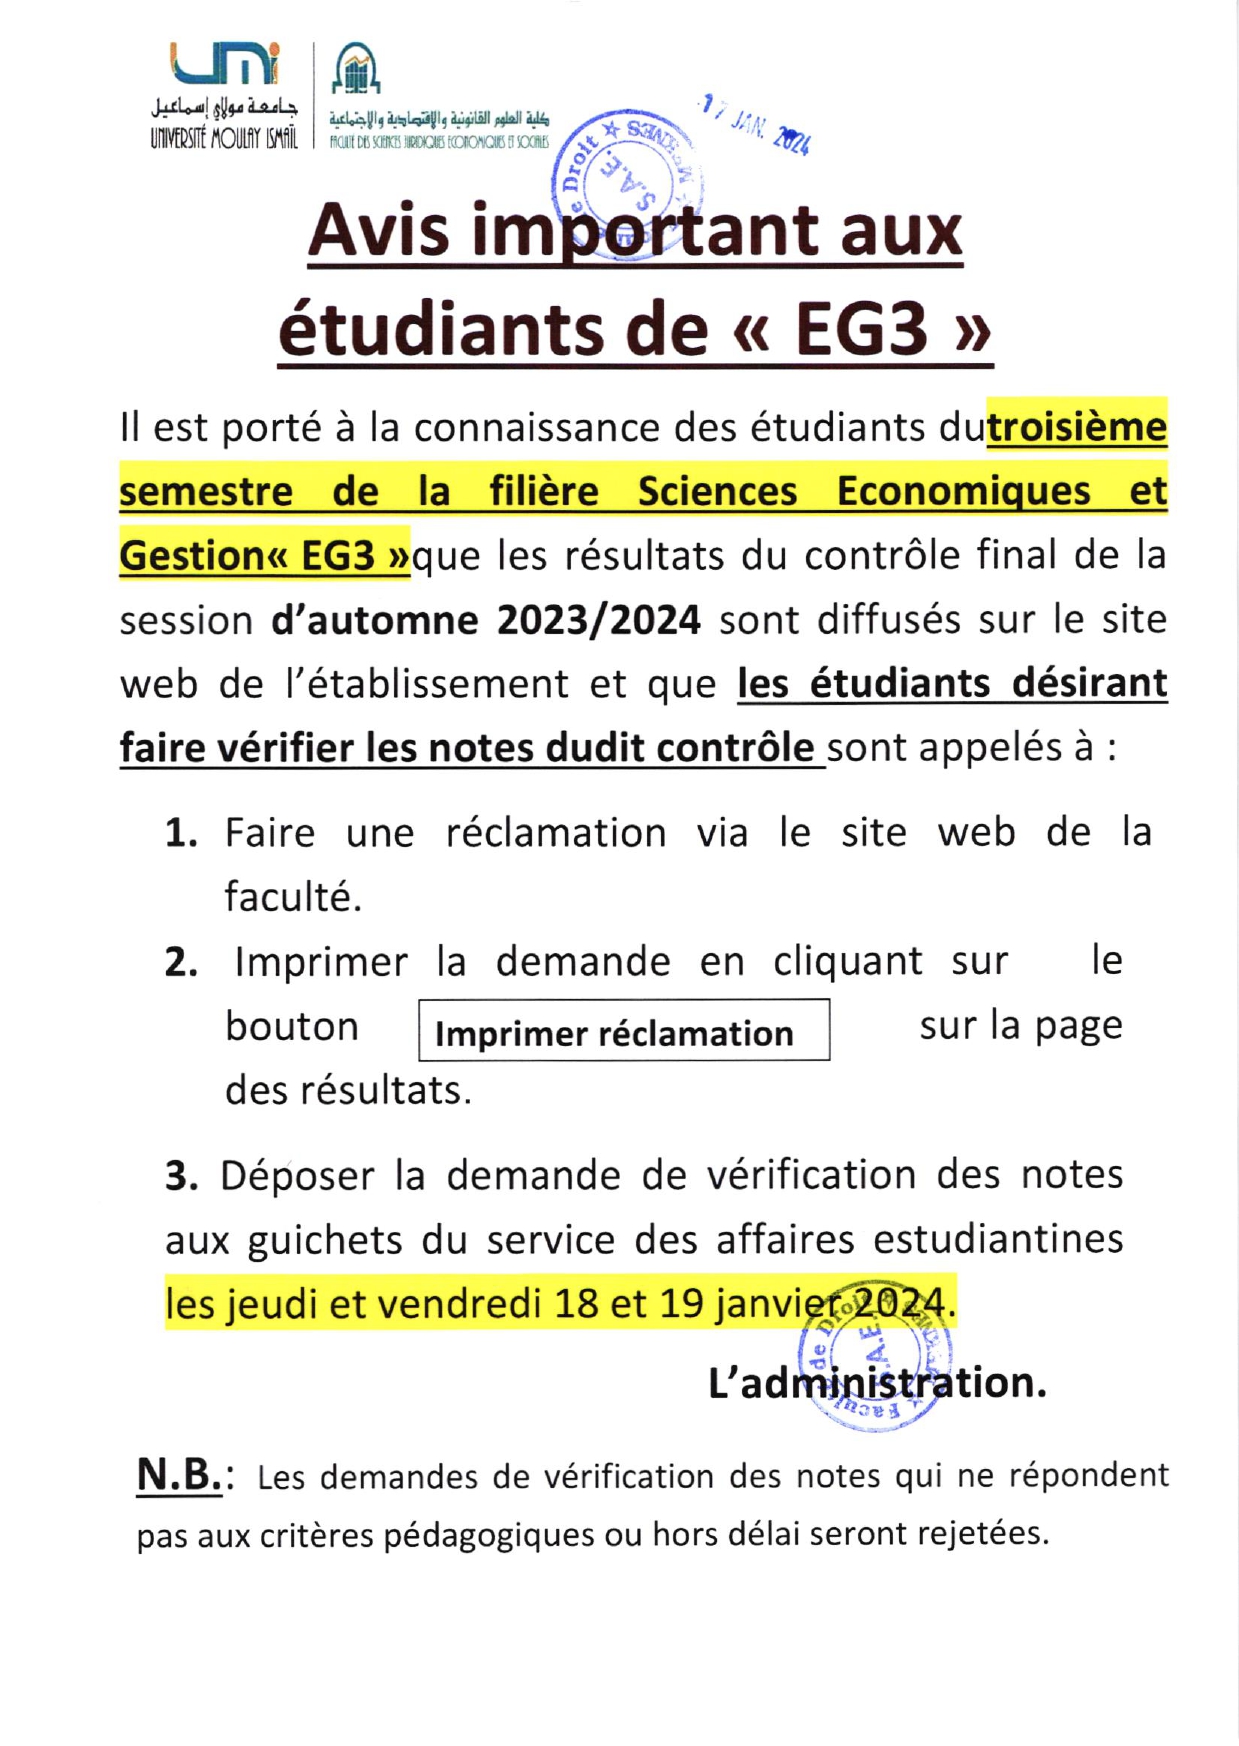 Avis important aux étudiants de EG3